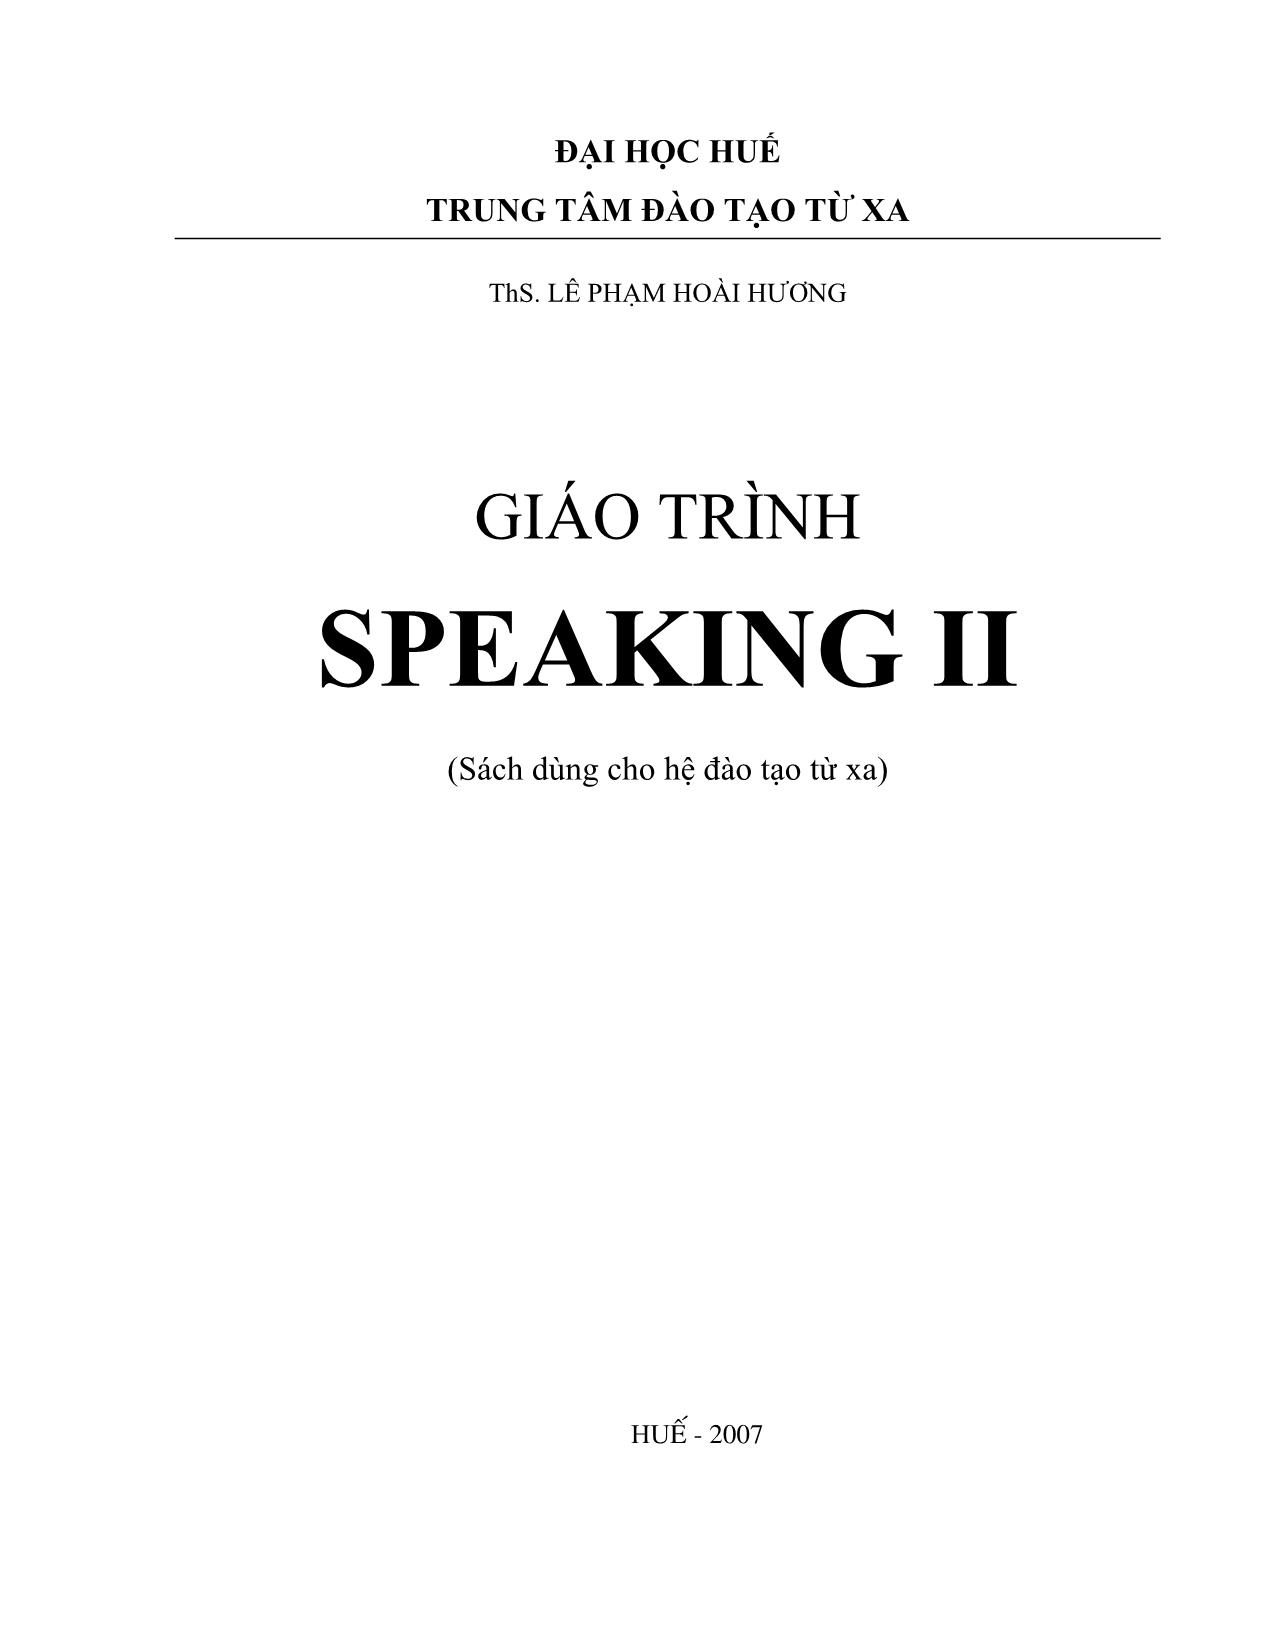 Giáo trình Speaking II (Phần 1) trang 1